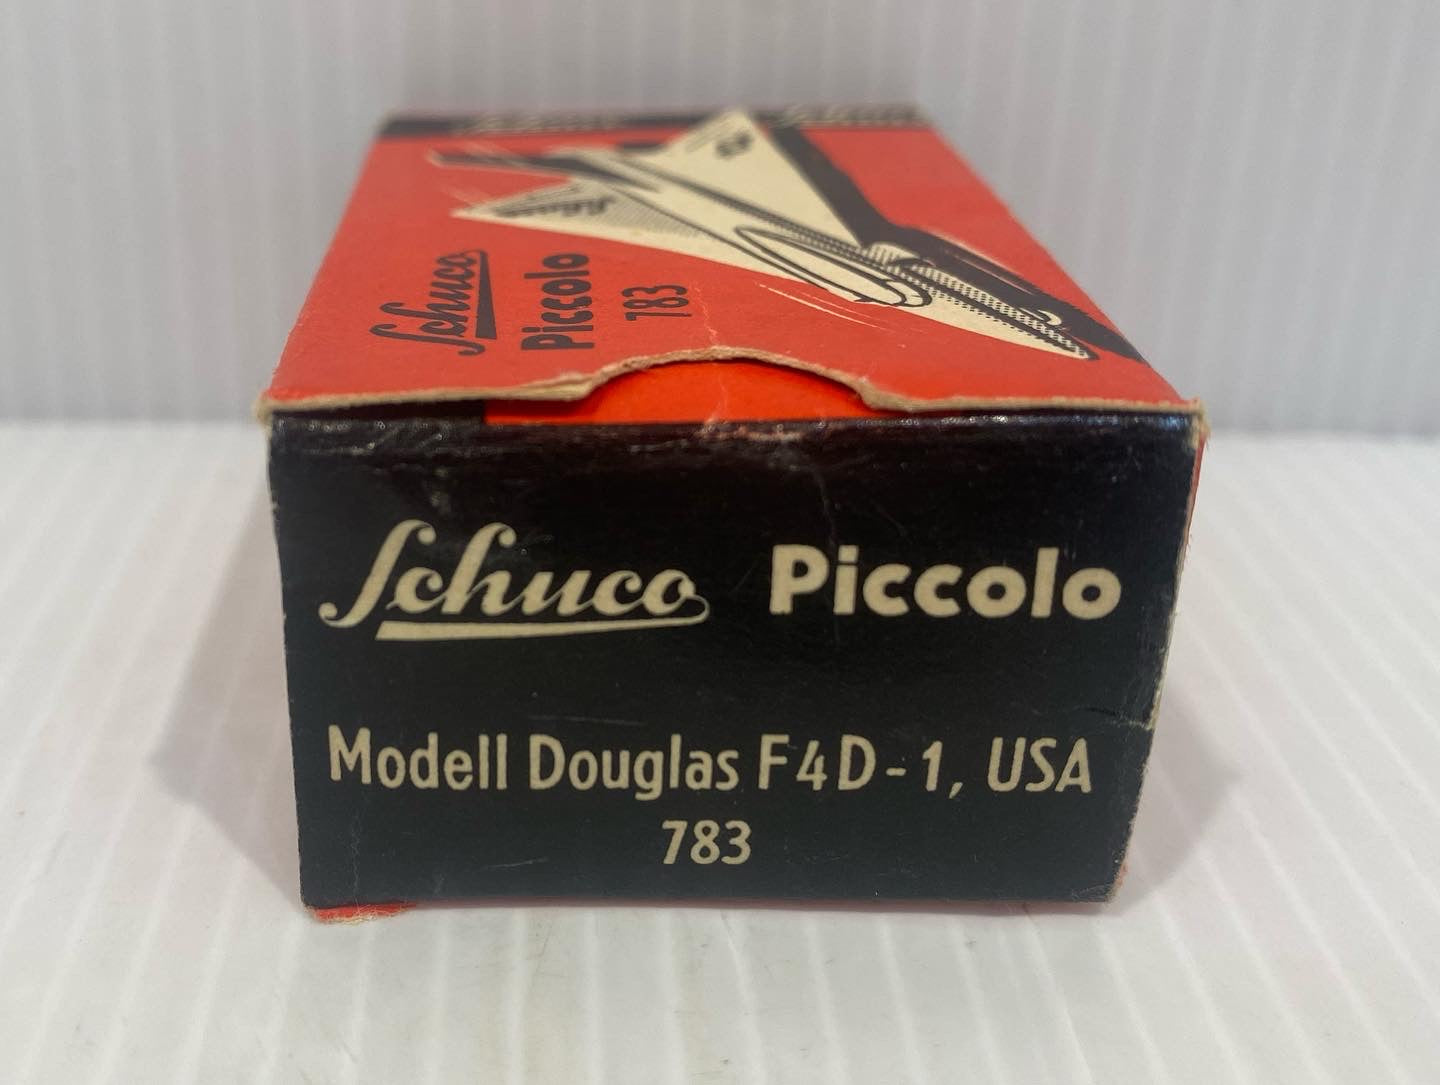 Original Vintage Schuco Piccolo 783 Douglas F4D-1